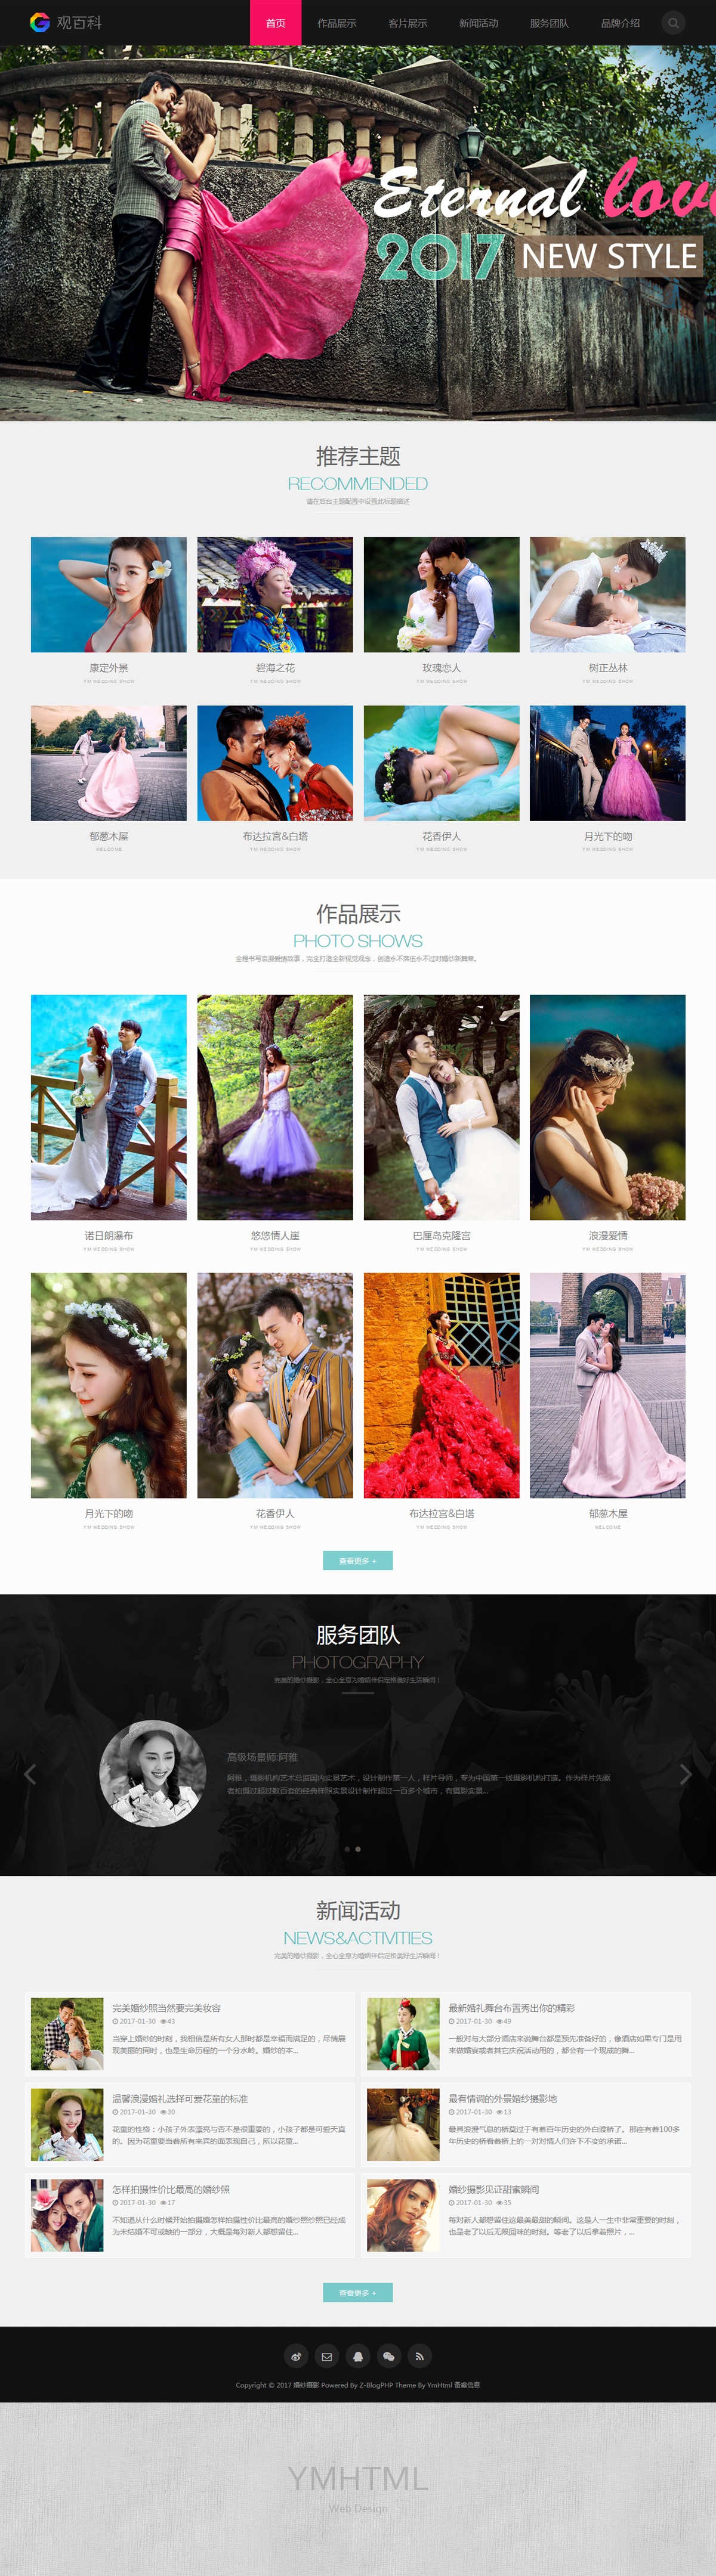 婚纱摄影网站界面设计 摄影 婚庆 Web设计 界面设计 UI设计 图2